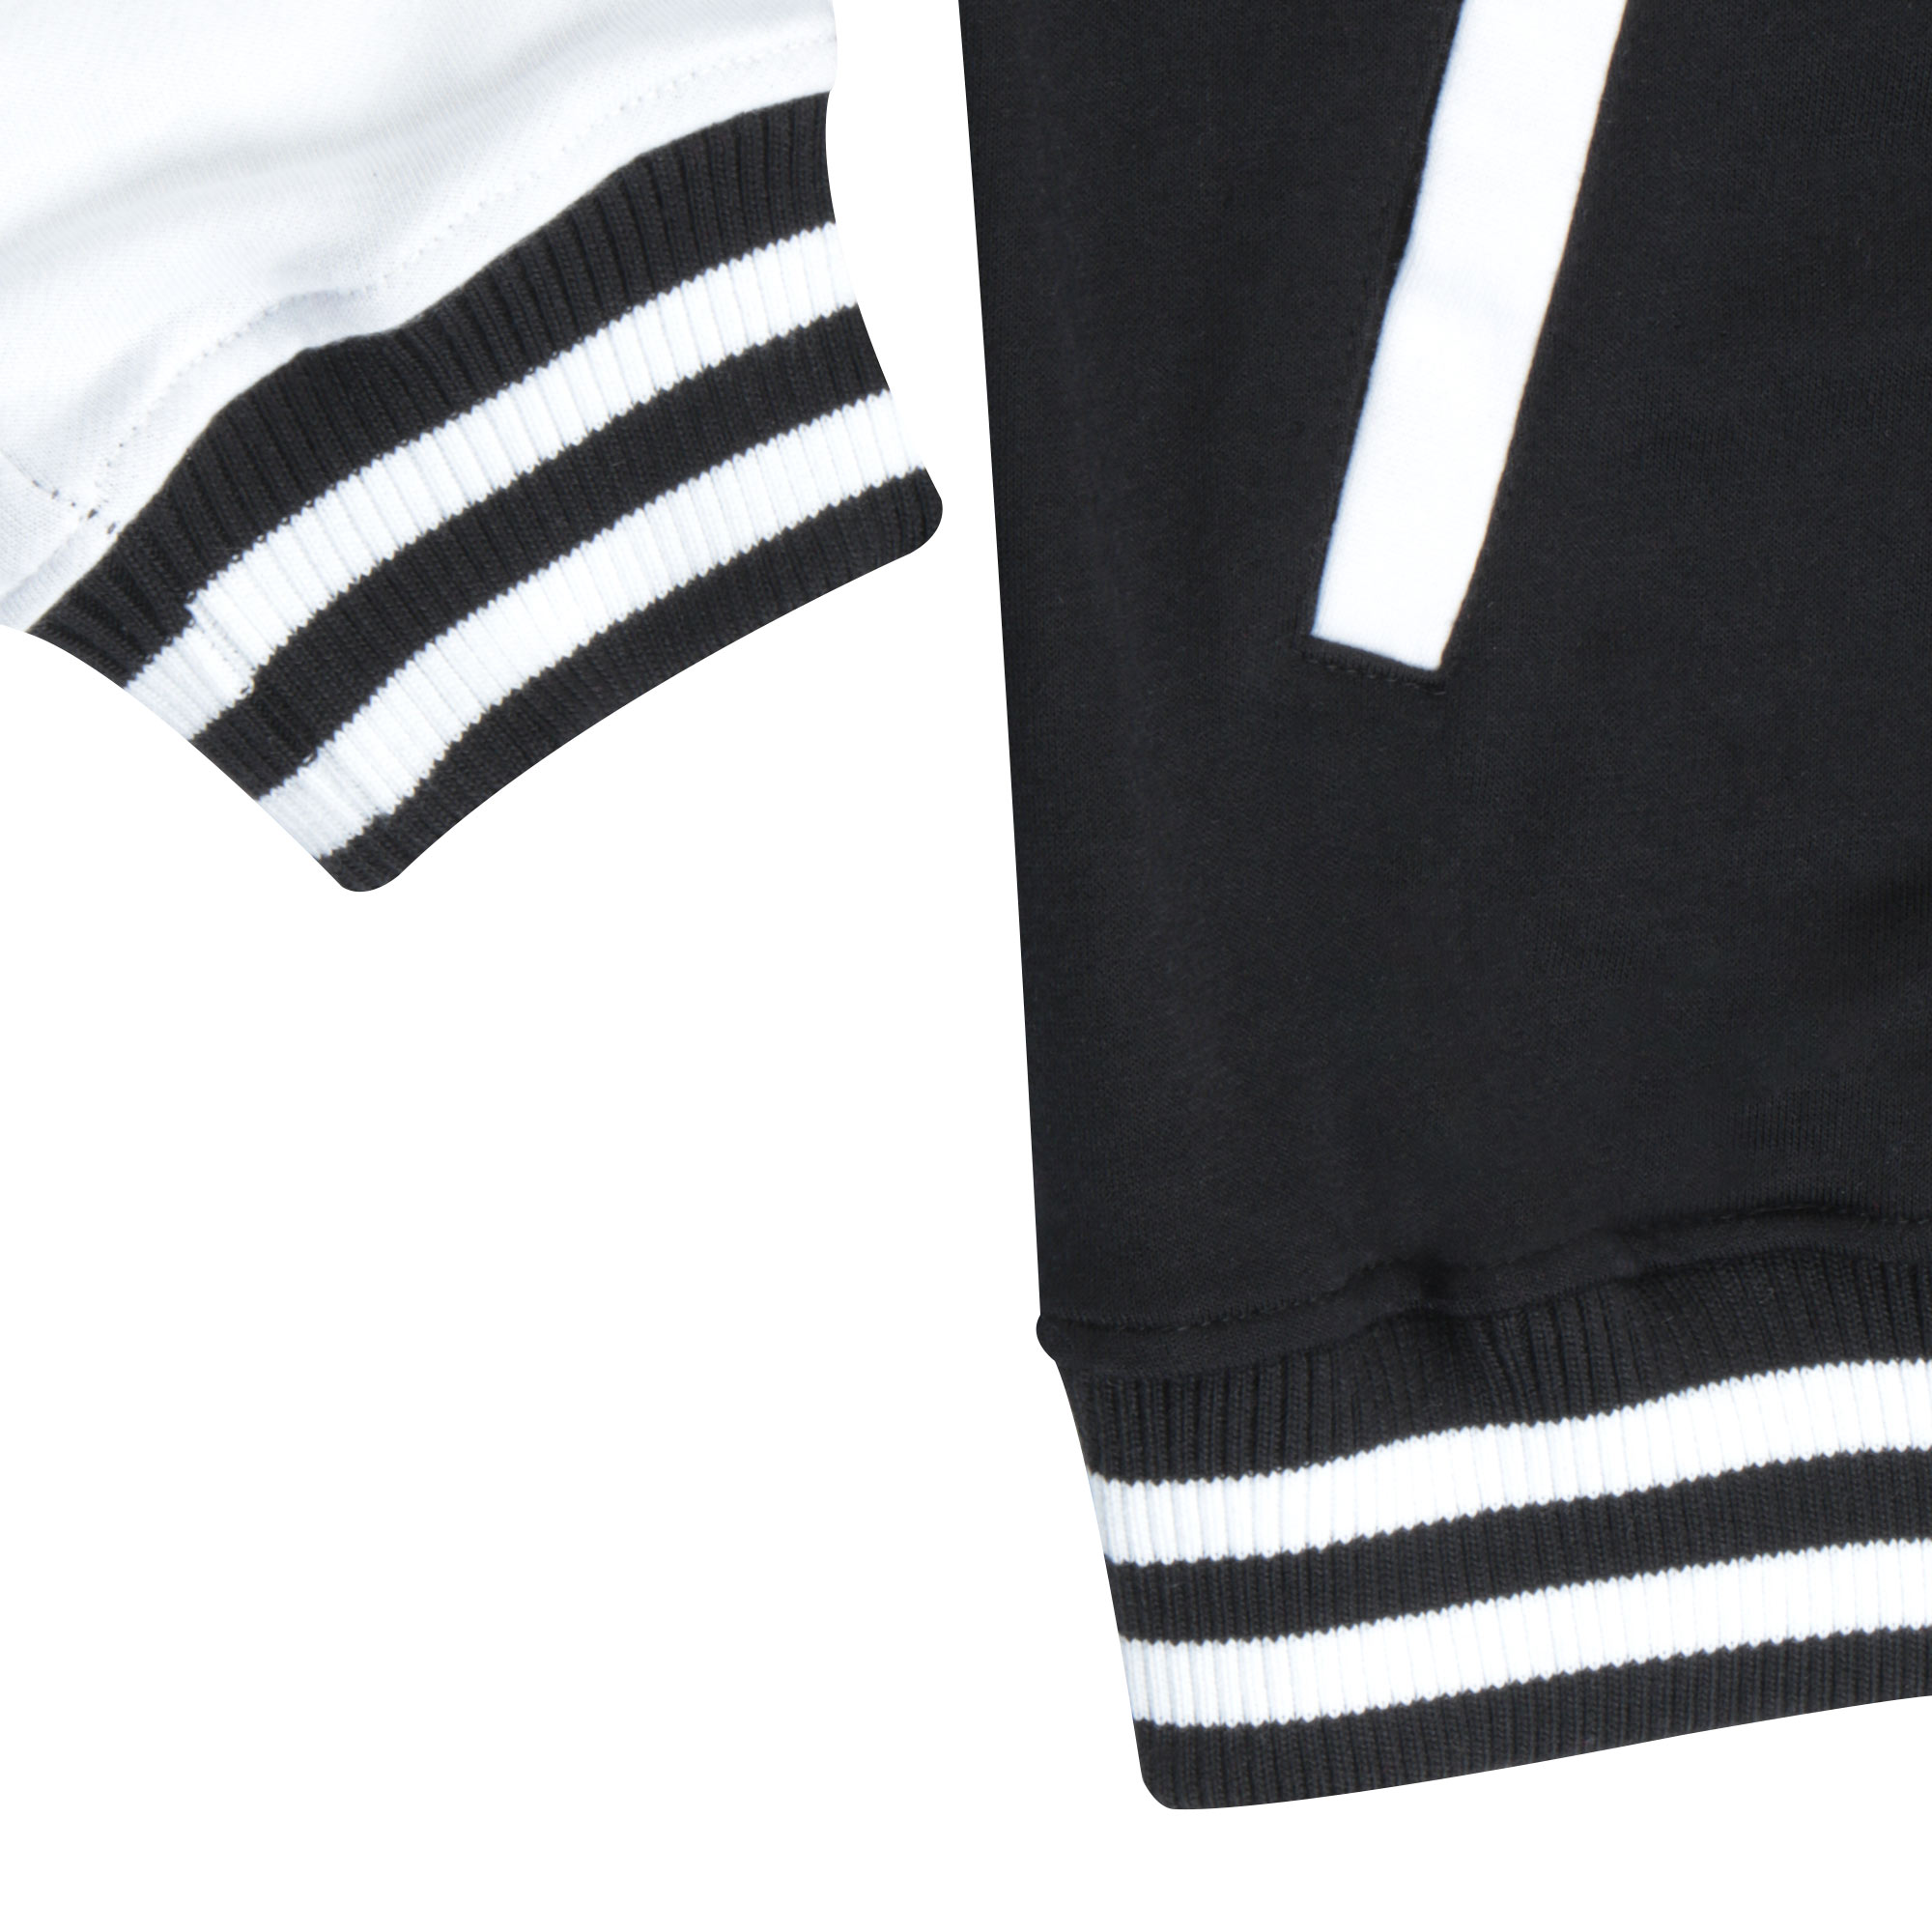 Бомбер Garment чёрный/белый XL полиэстер, цвет черный, размер XL - фото 2